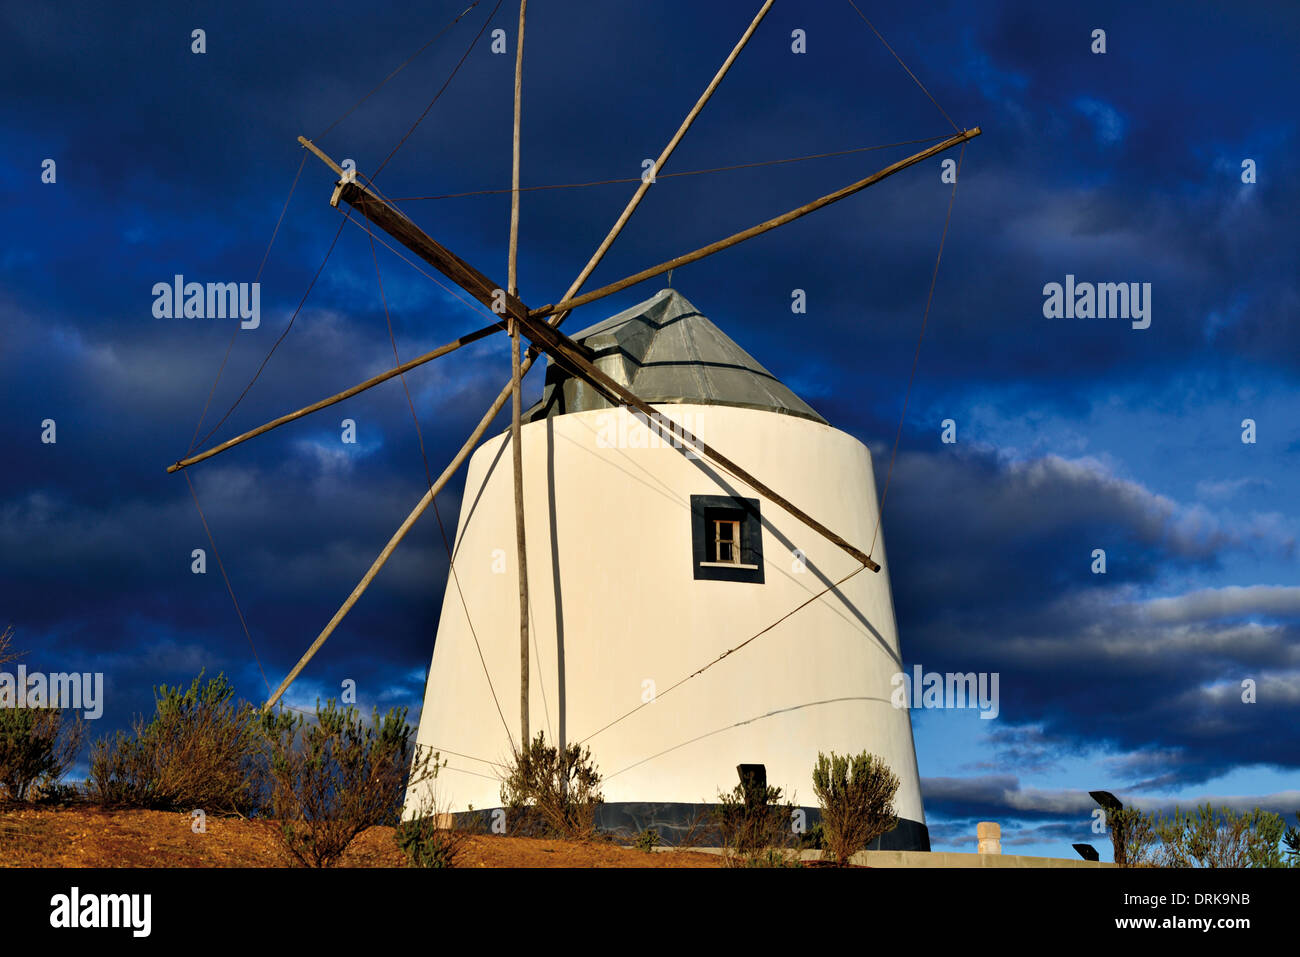 Portugal, Algarve: Historic and restored windmill on the hill of Revelim de Santo Antonio in Castro Marim Stock Photo